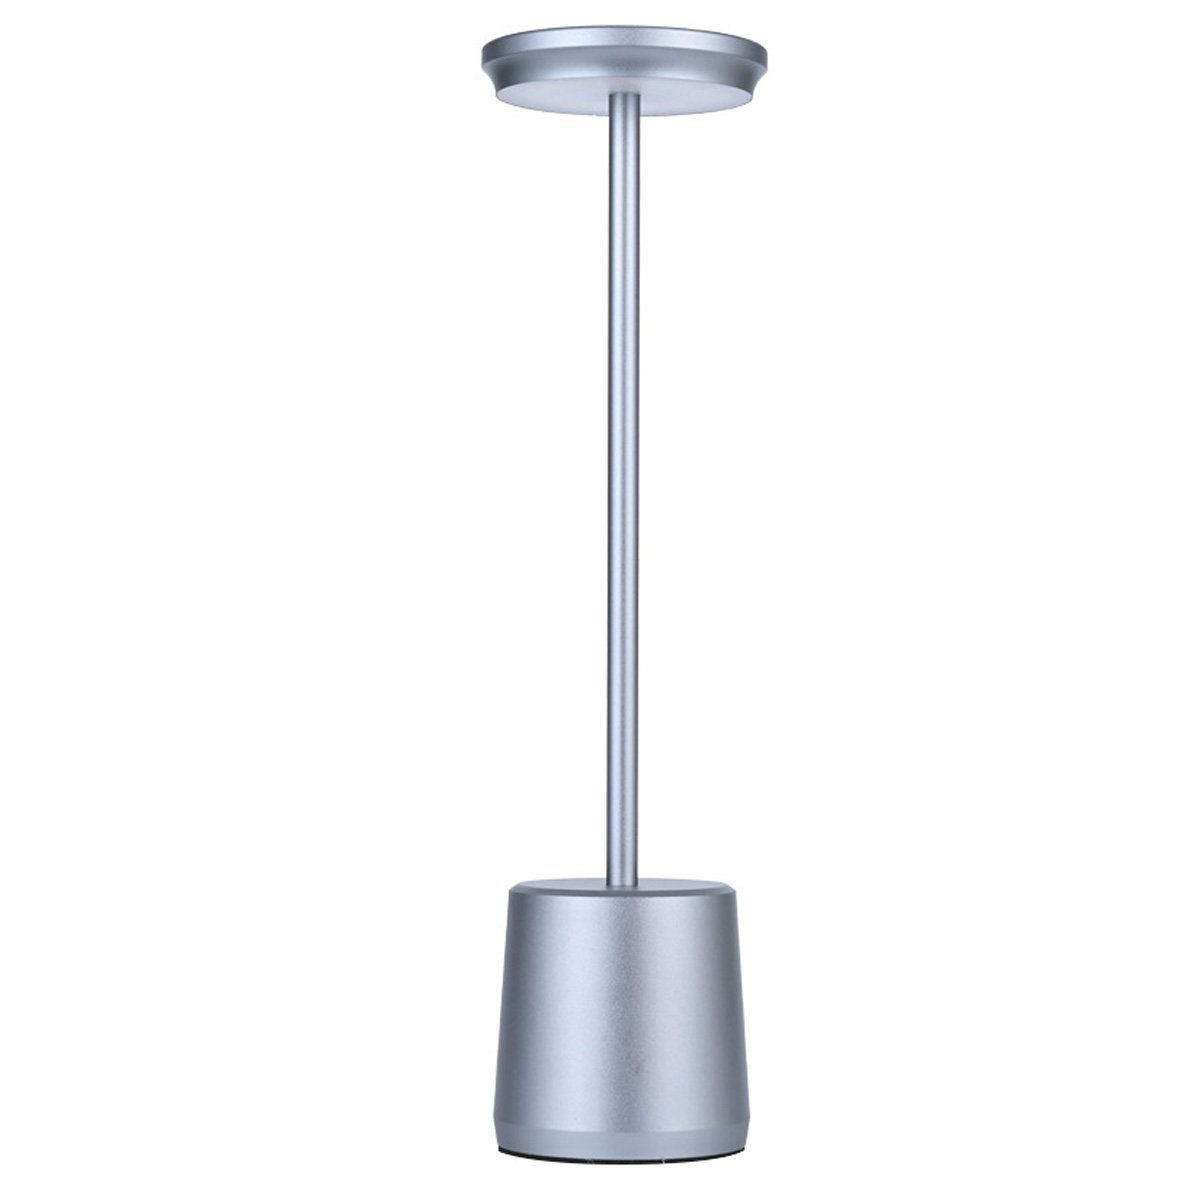 DOPWii LED Schreibtischlampe 1.6W Schreibtischlampe,490*340mm Lampenkörper aus Aluminium,Dimmbar Grau